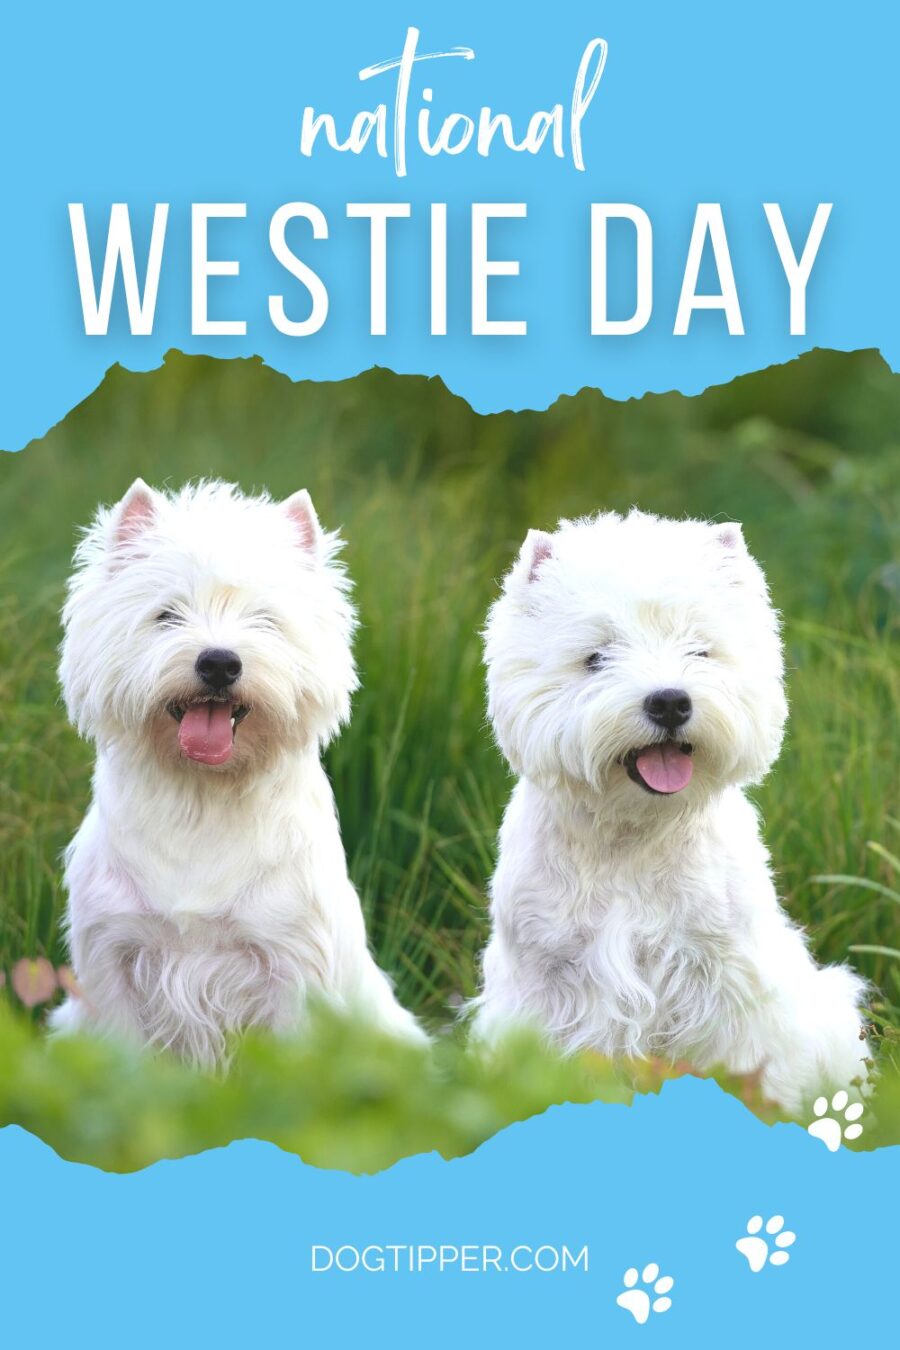 Día Nacional de Westie, una celebración anual de mascotas que celebra el West Highland White Terrier